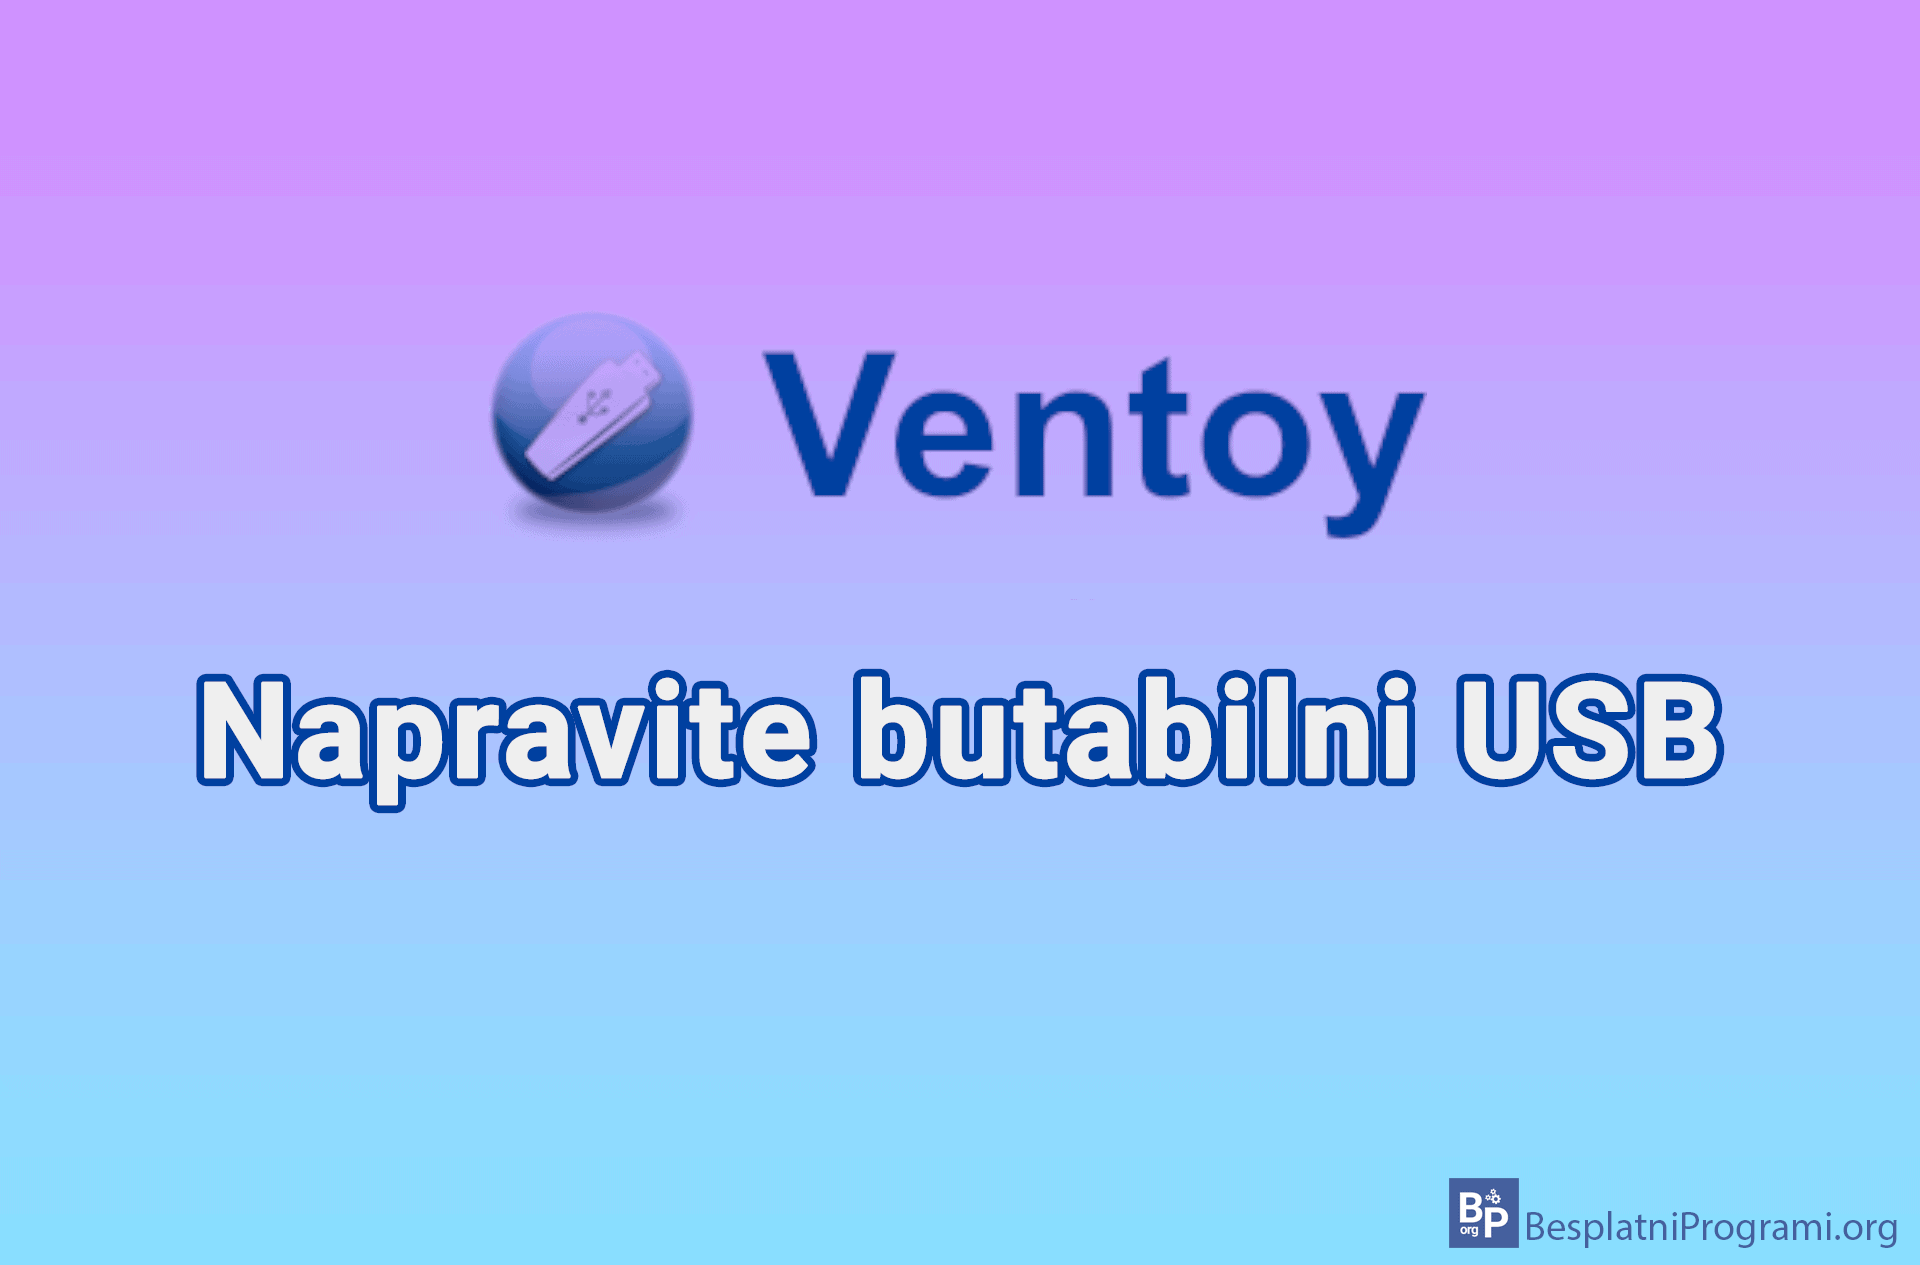 Ventoy - napravite butabilni USB